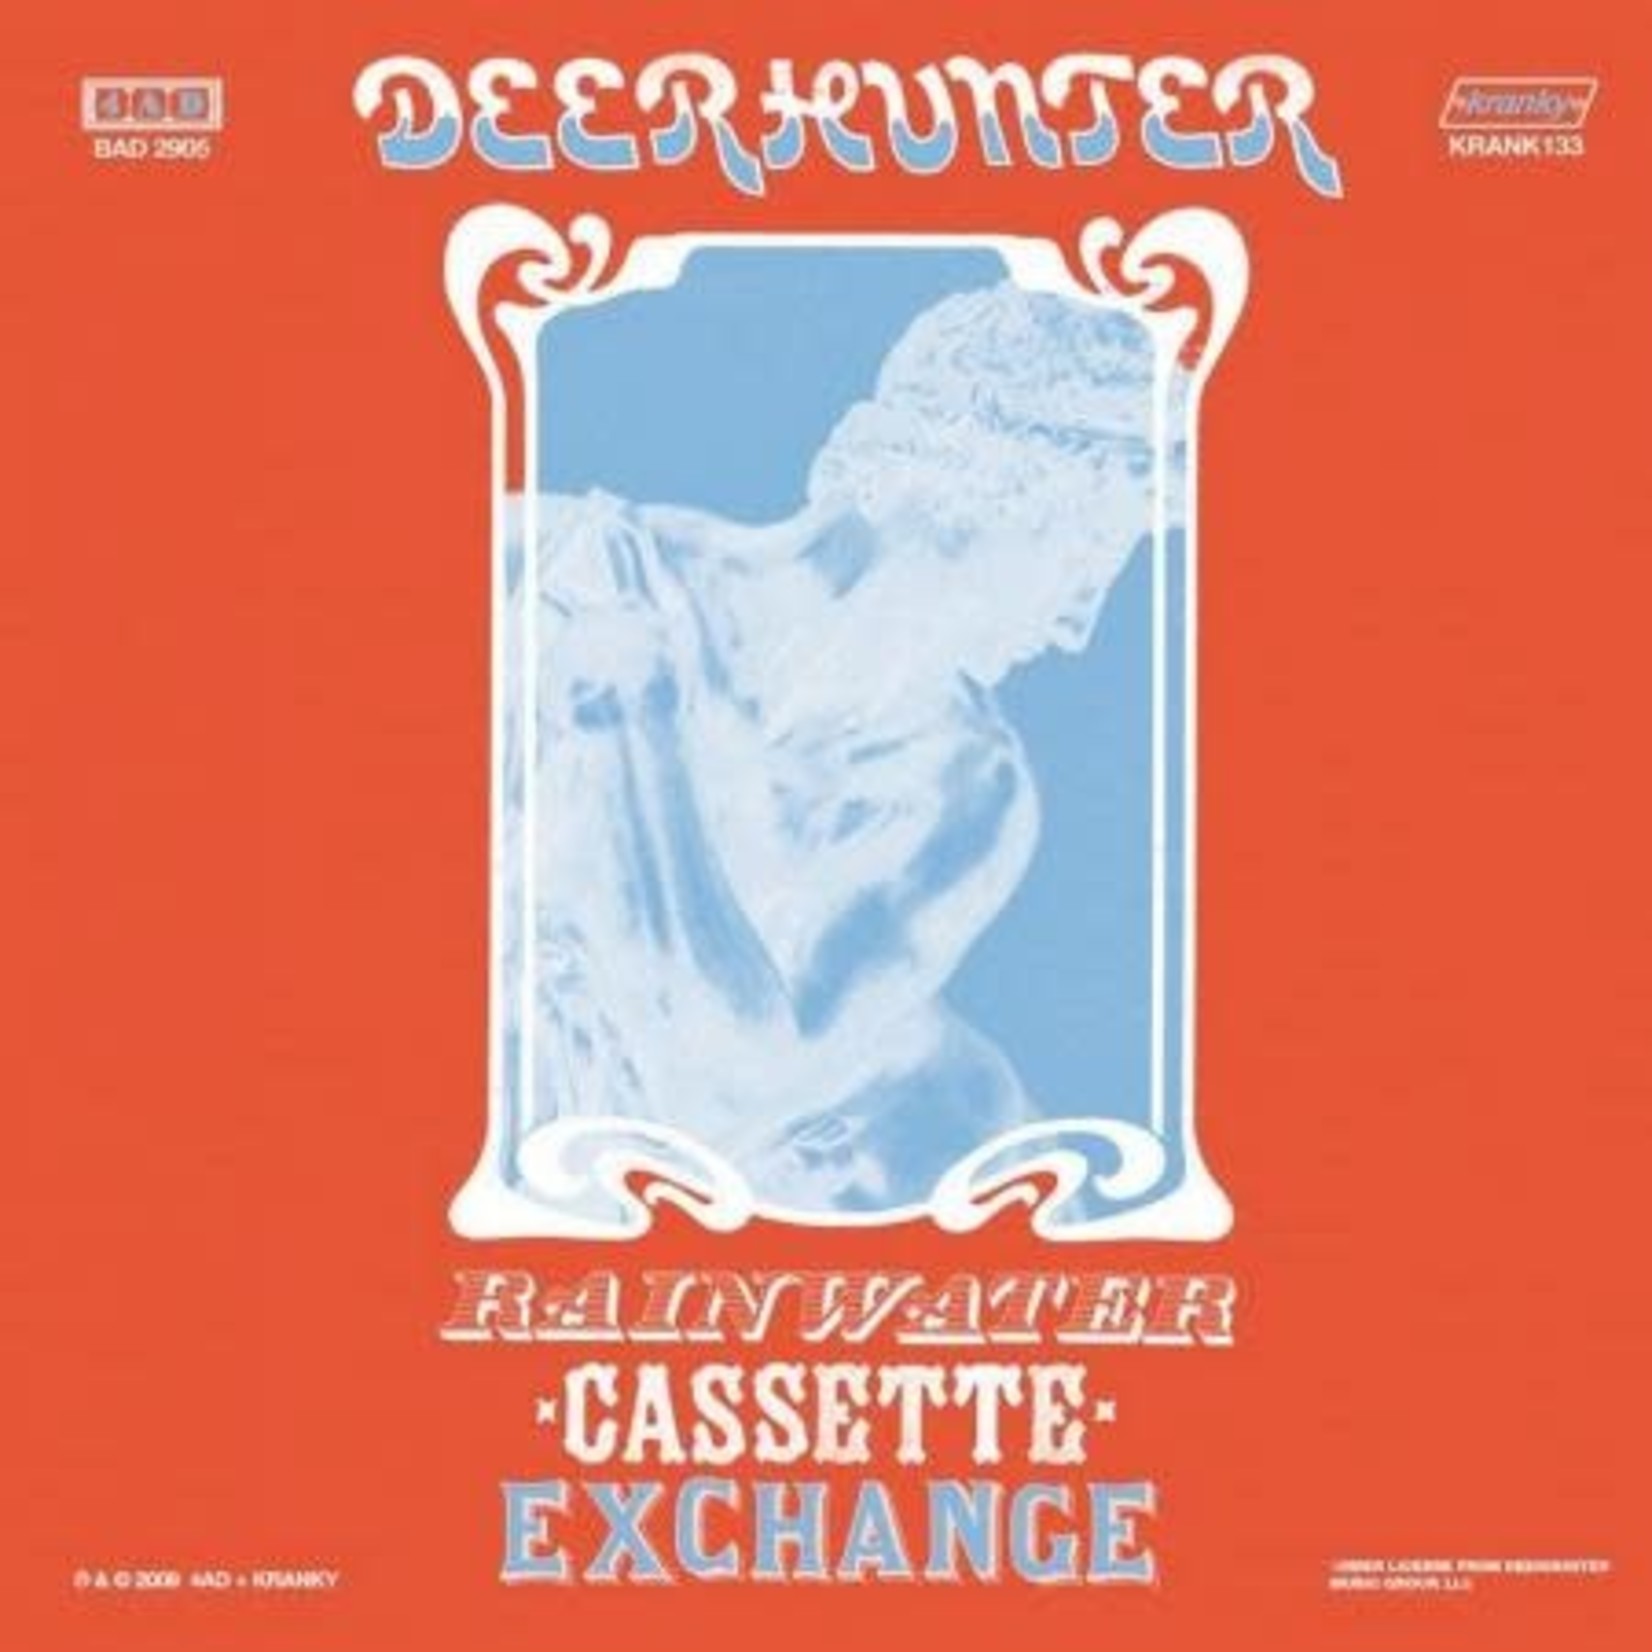 Kranky Deerhunter - Rainwater Cassette Exchange (12")